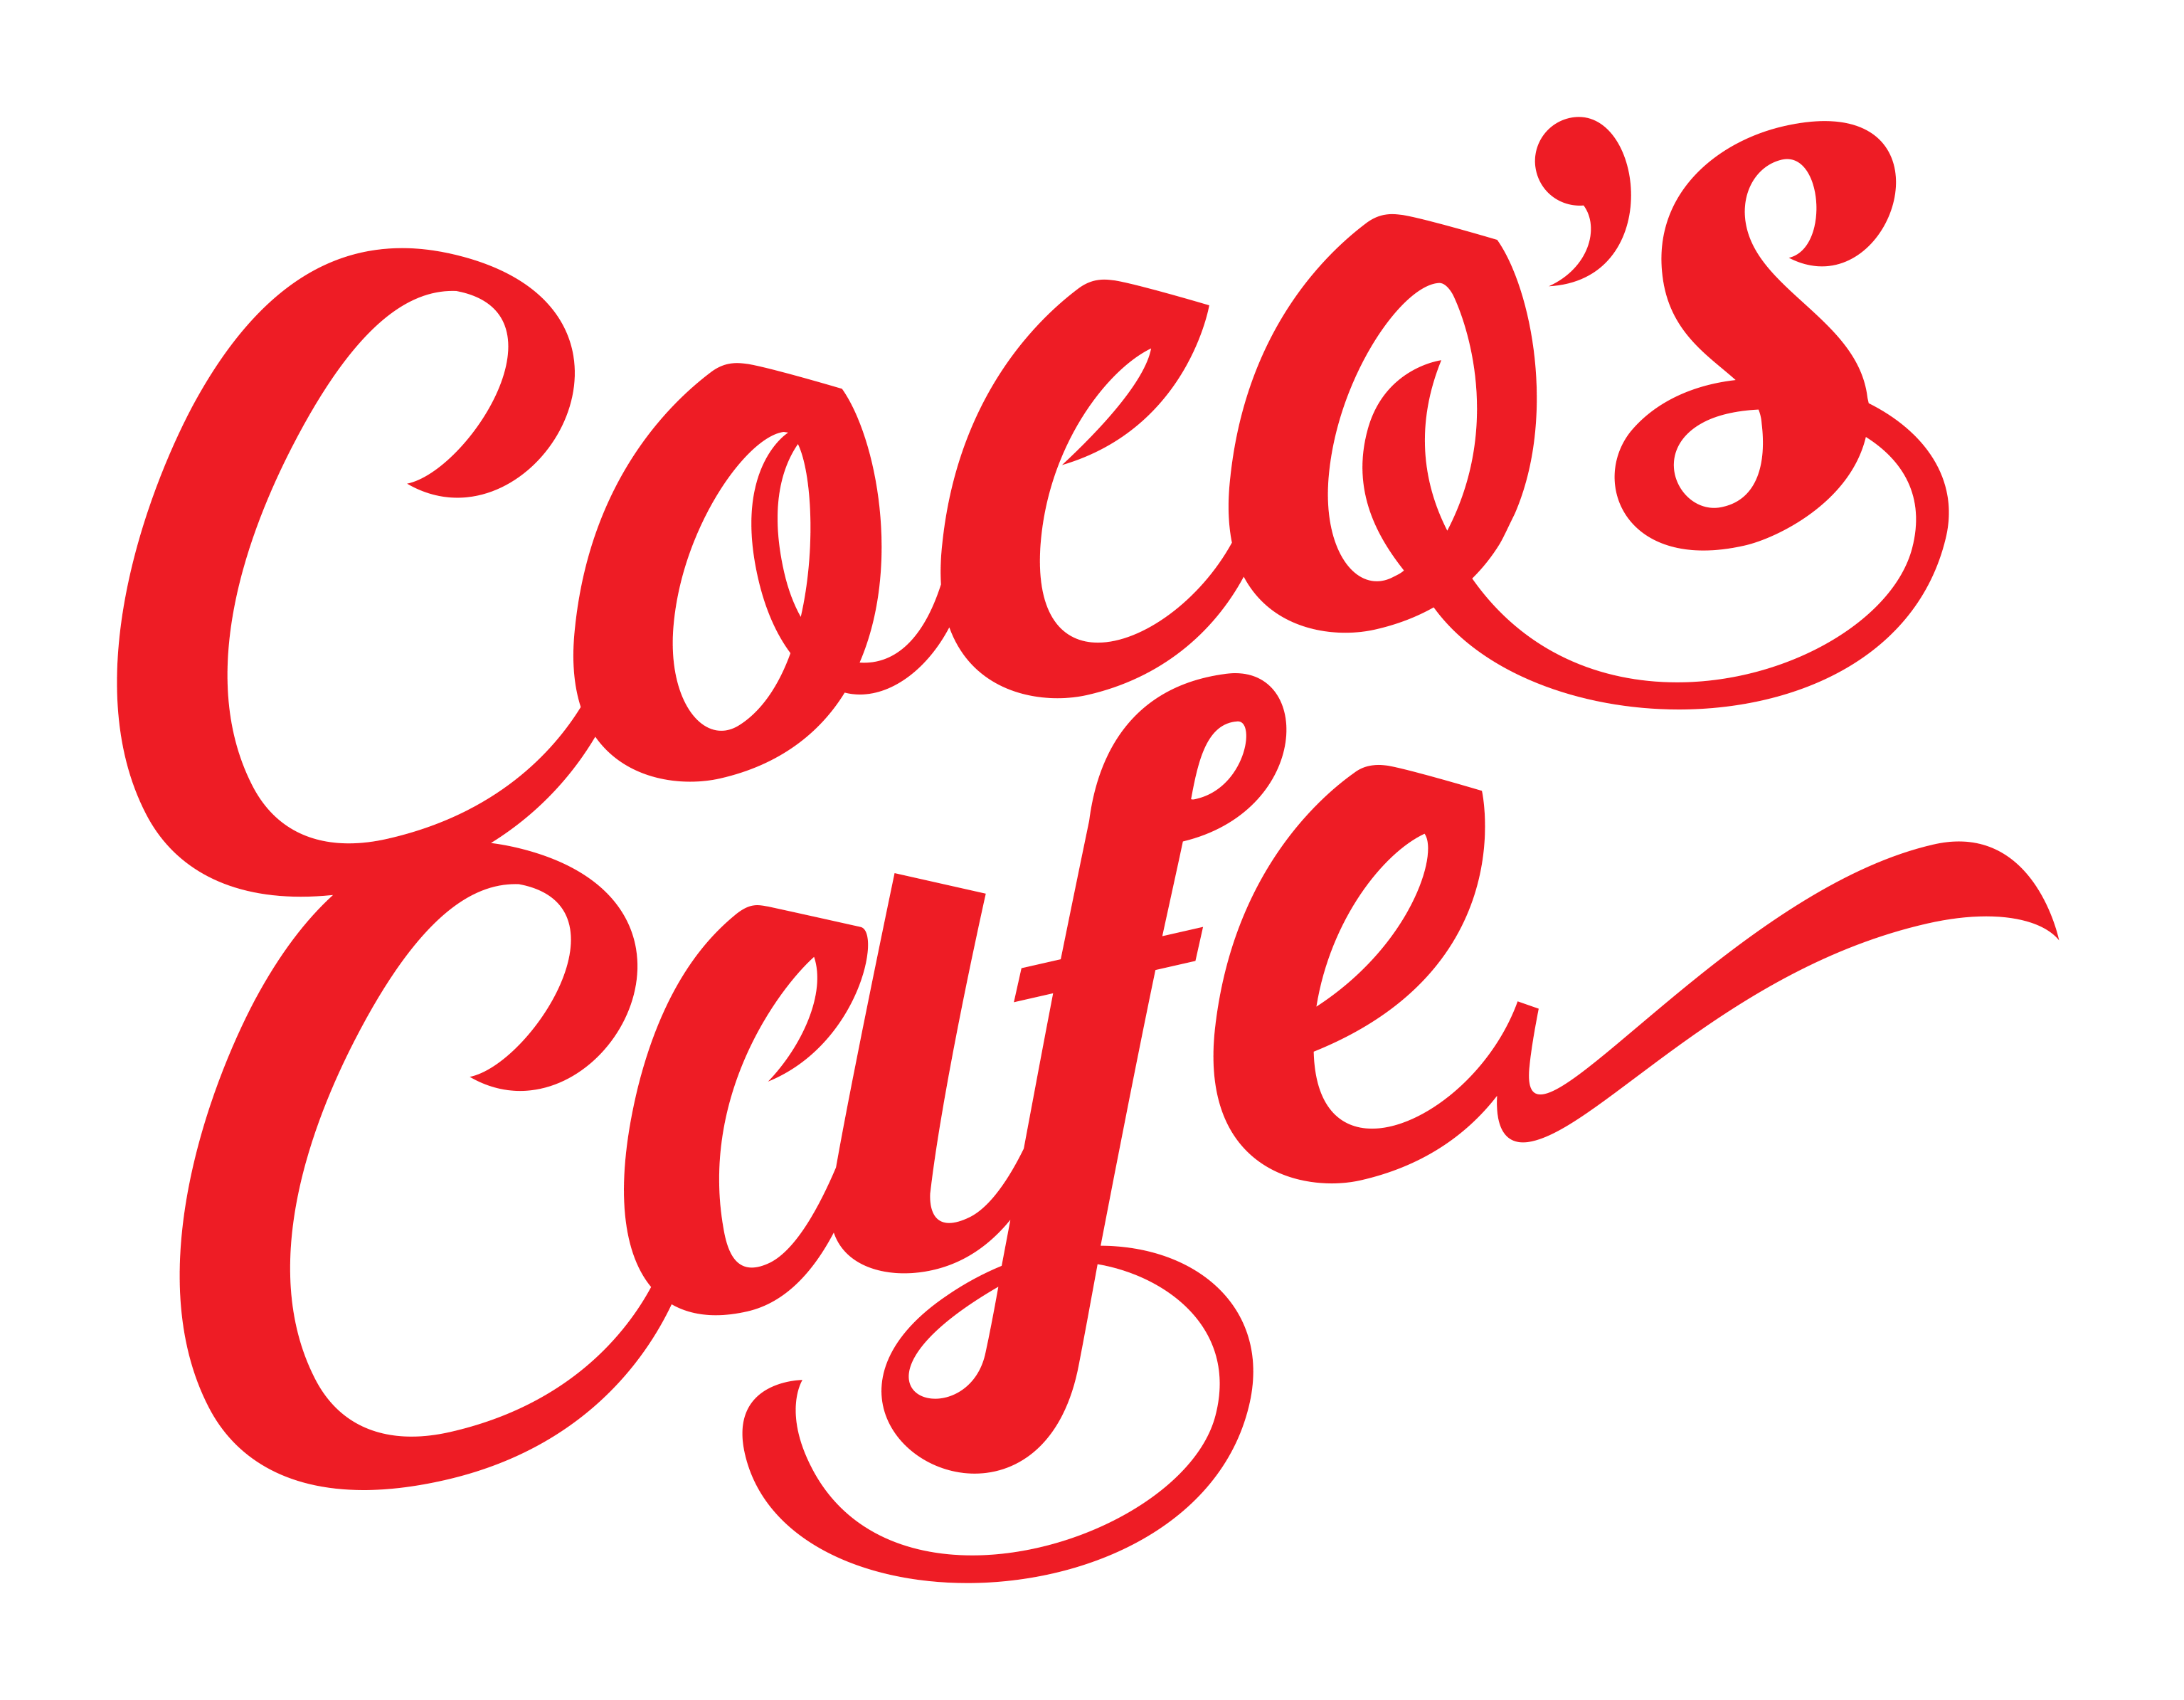 Cocos Cafe